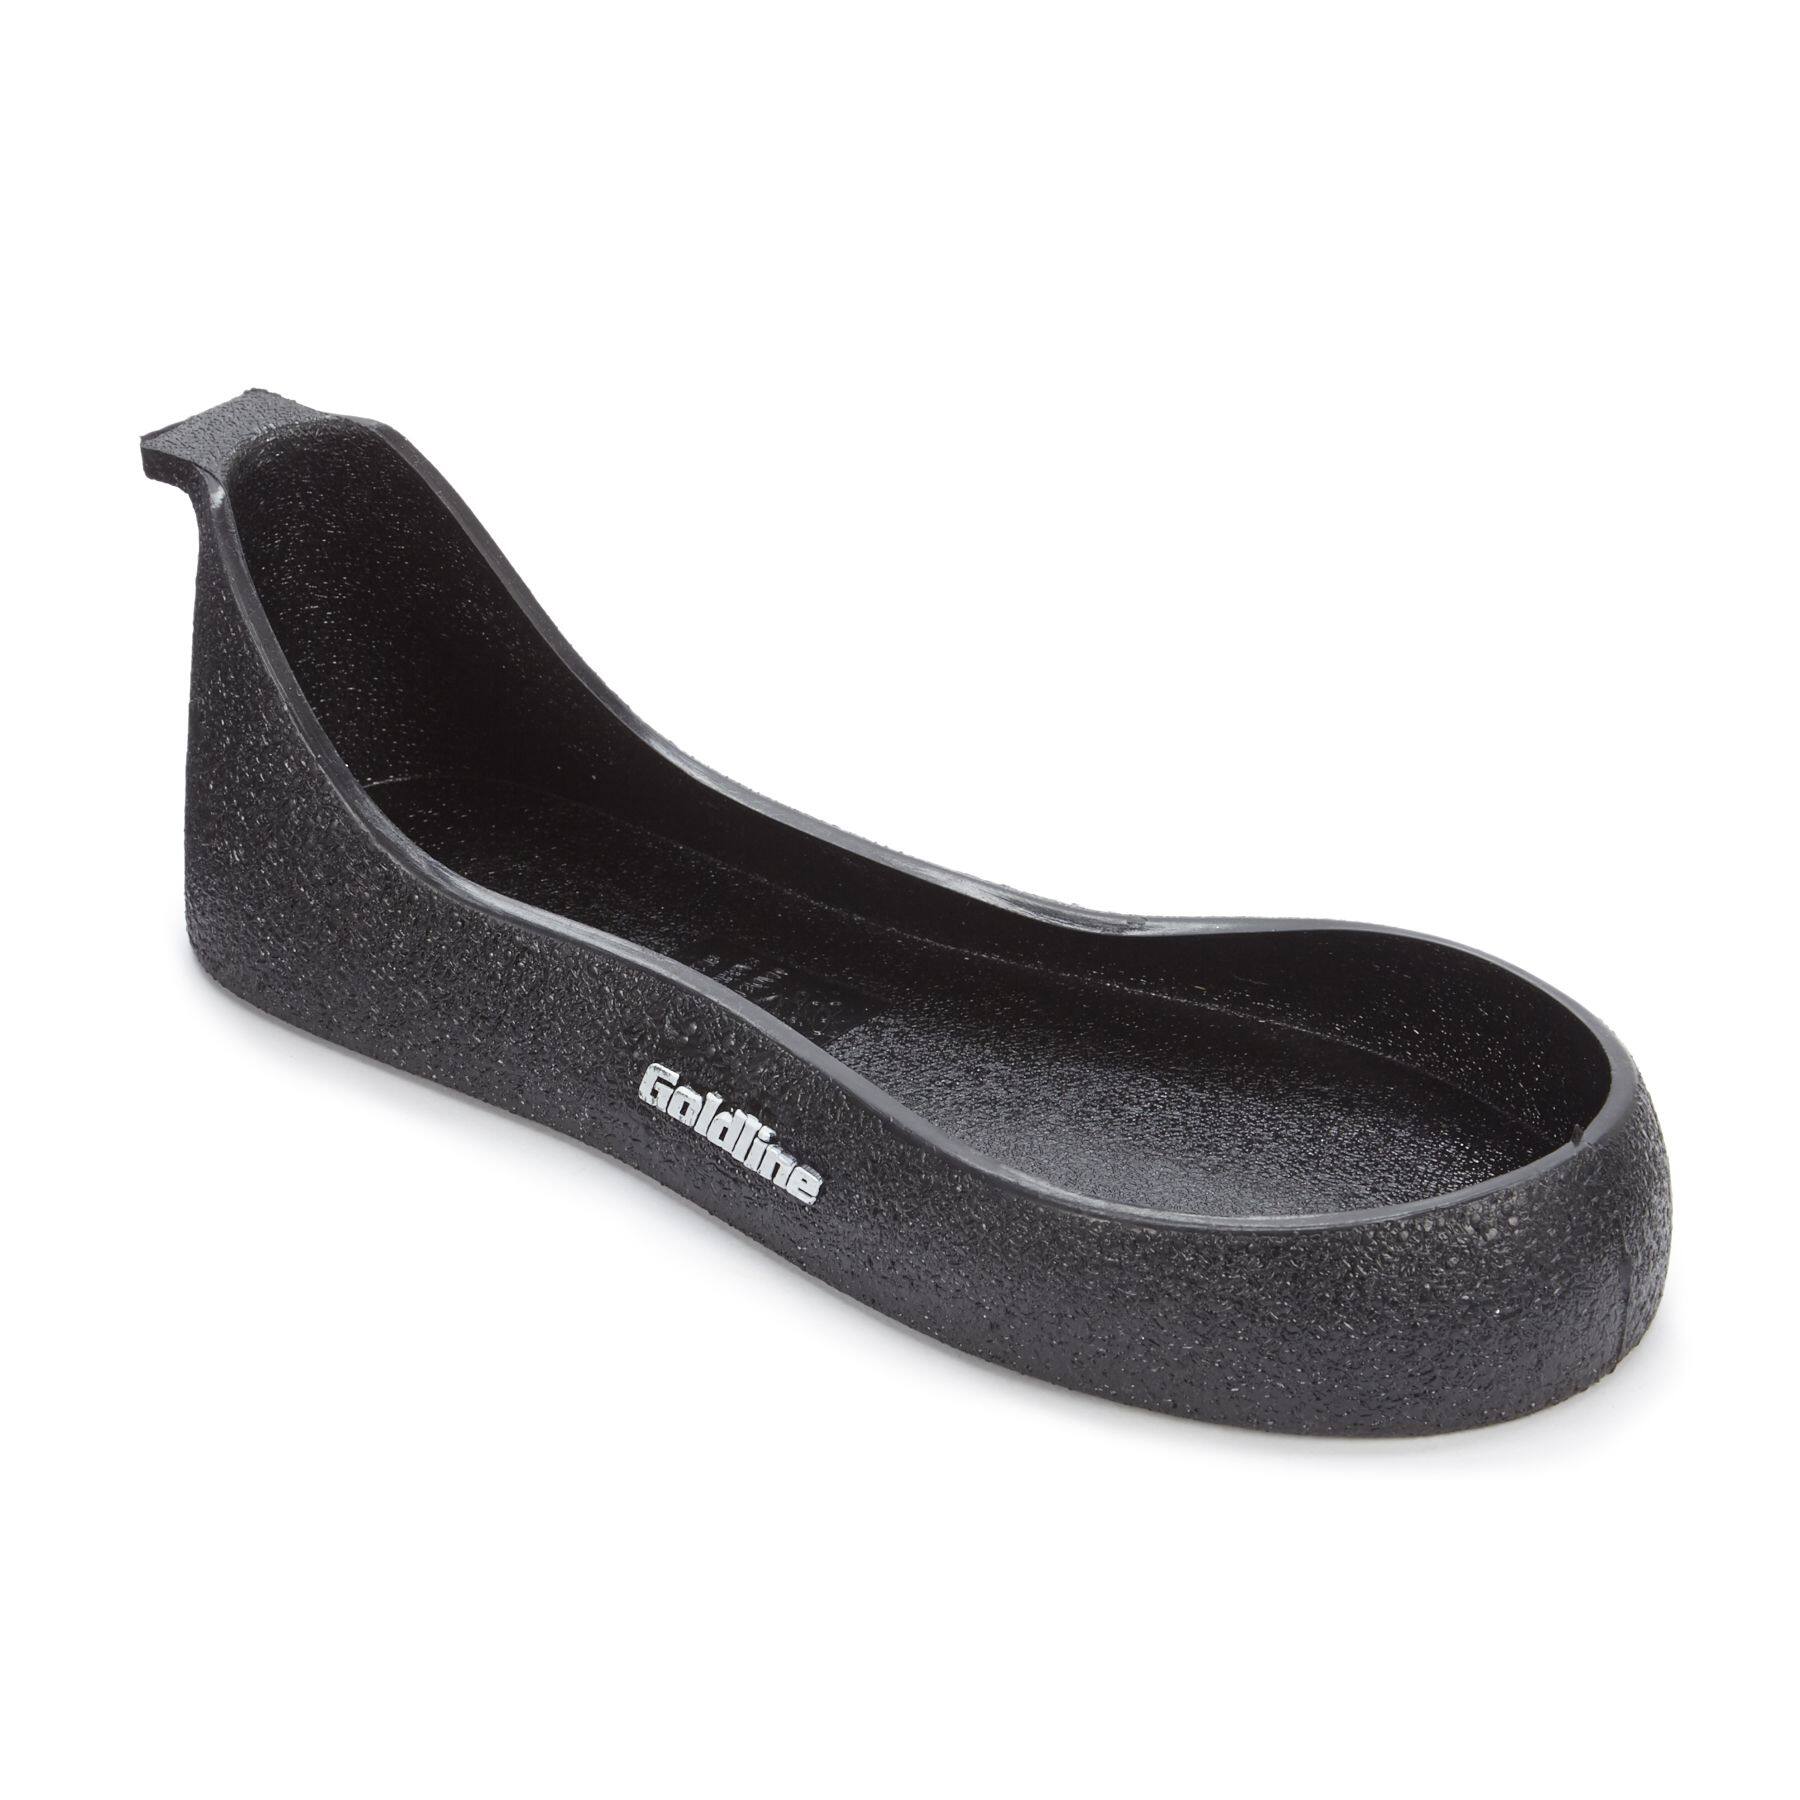 Goldline Unisex Men's/Women's Rubber Slip-On Full Sole Anti-Slider Curling  Shoe Gripper, Assorted Sizes